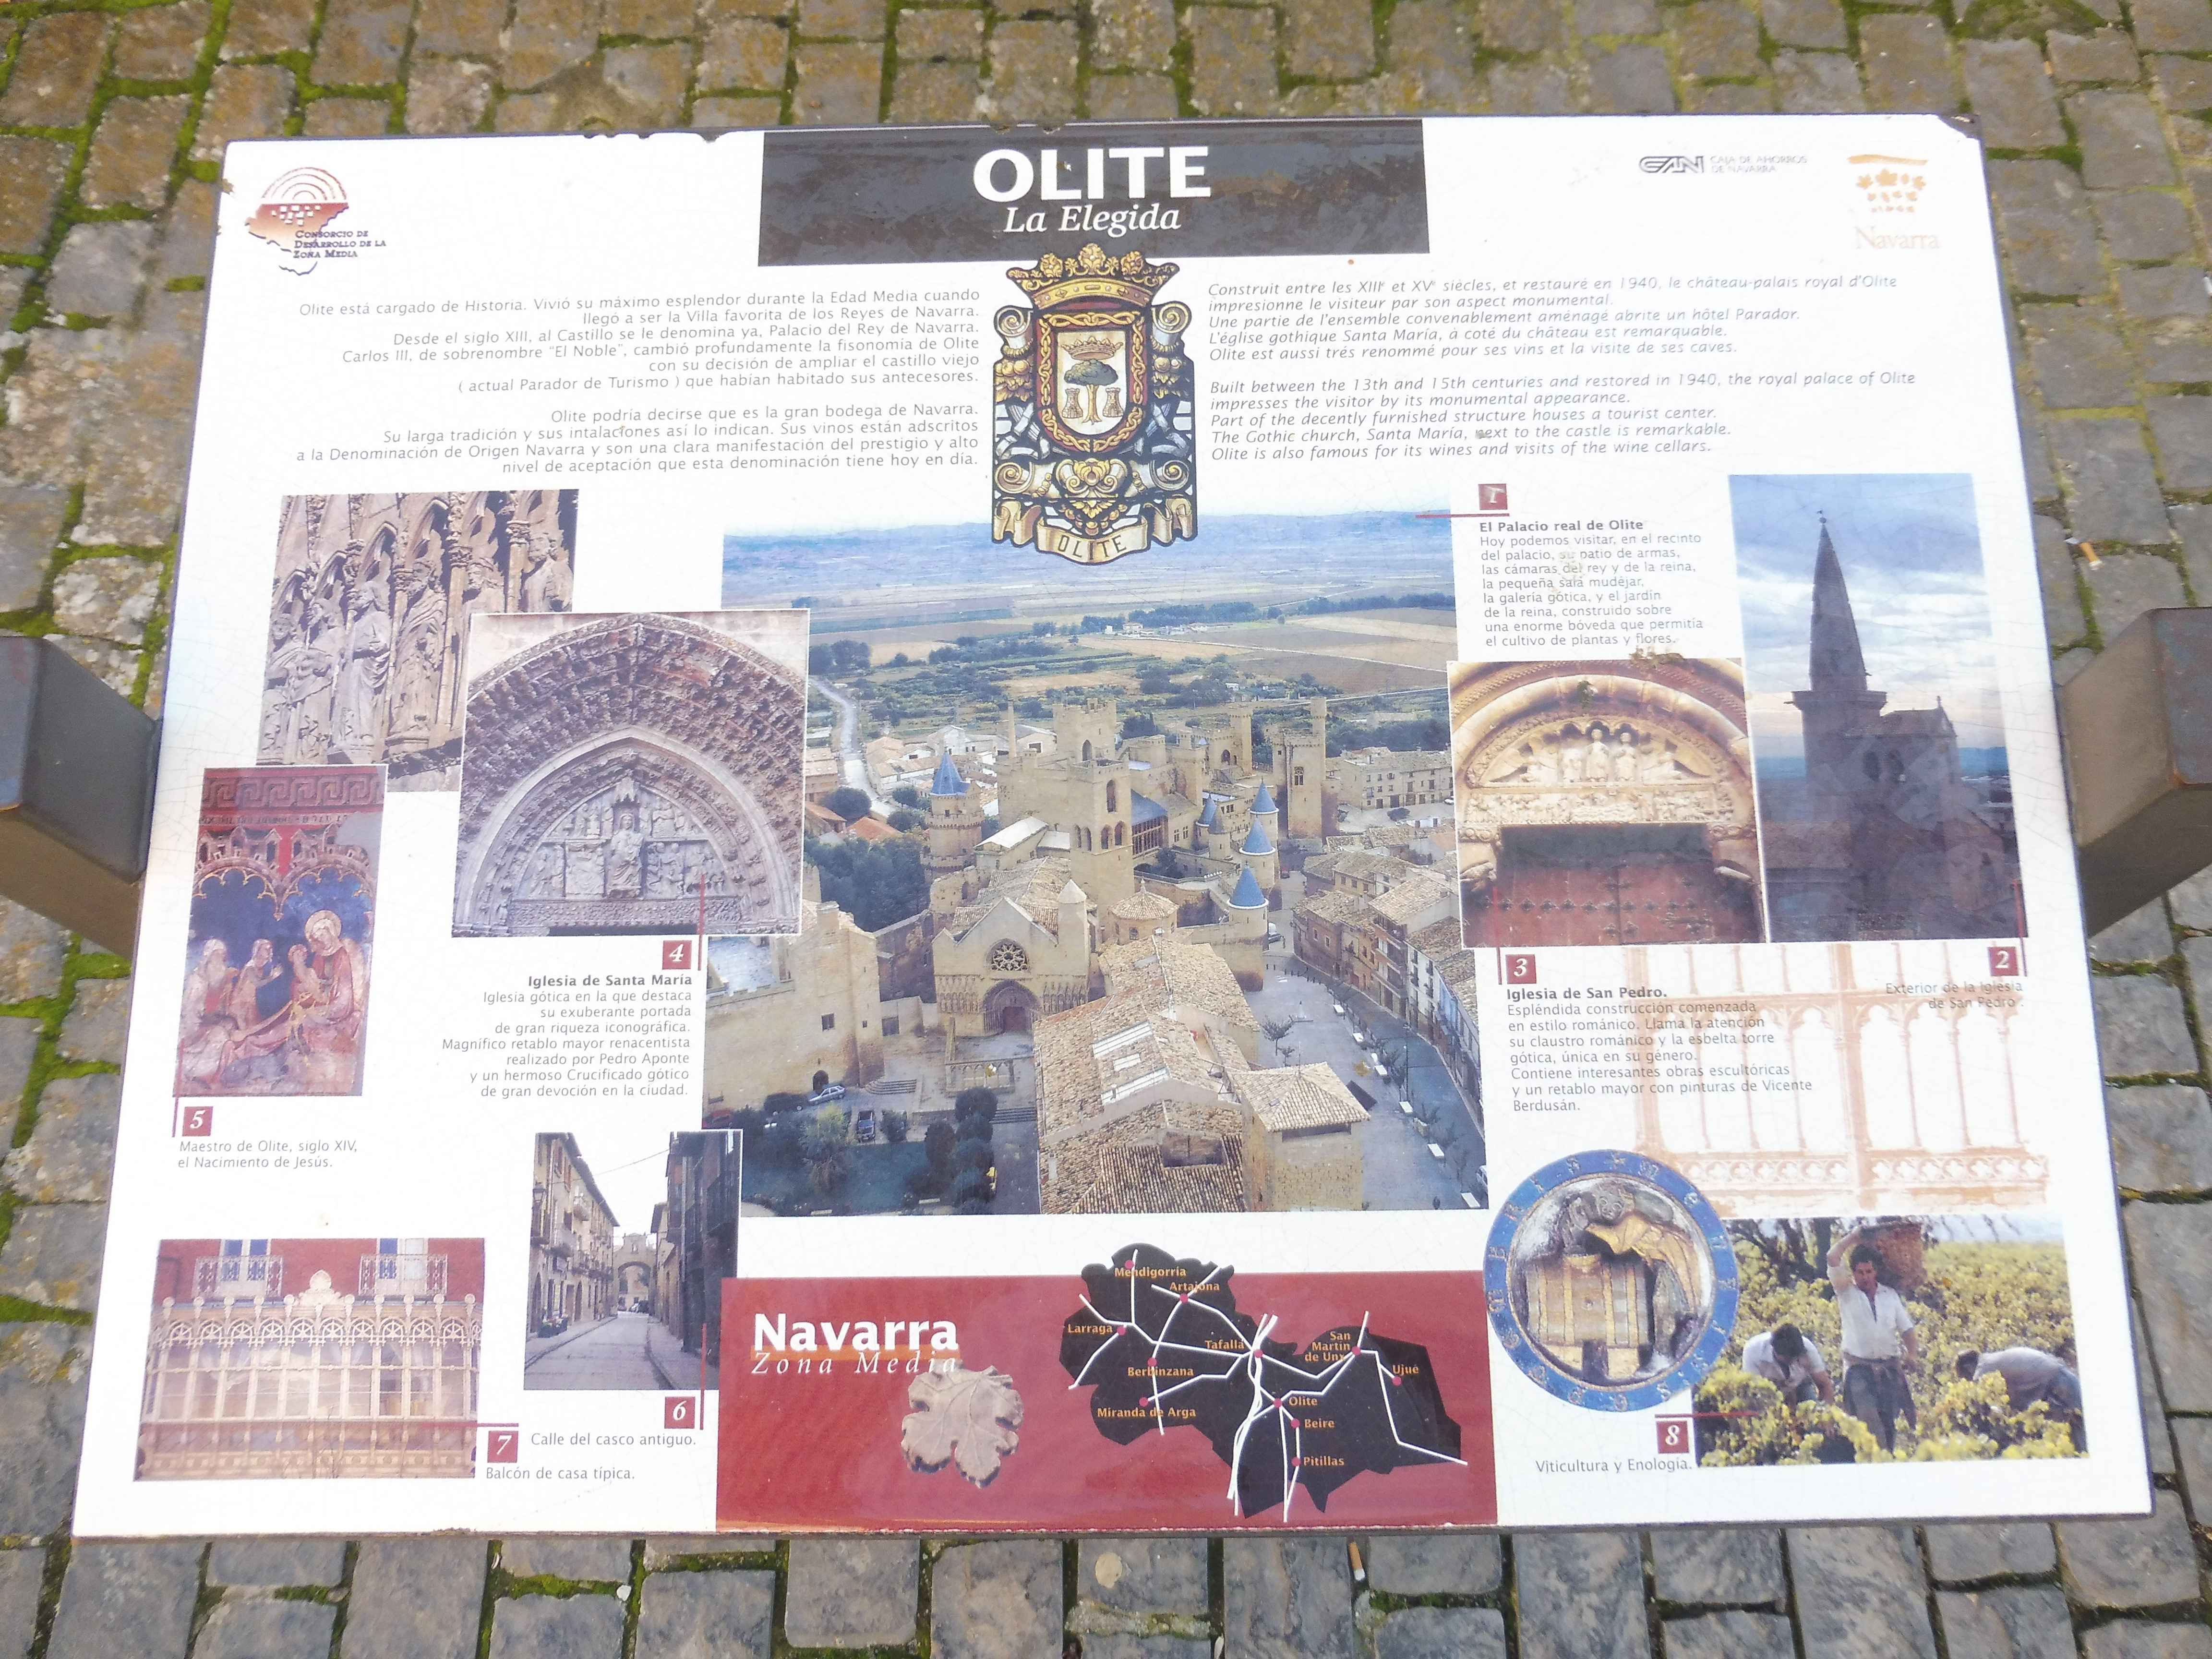 Explication Sur La Ville De Olite en Images